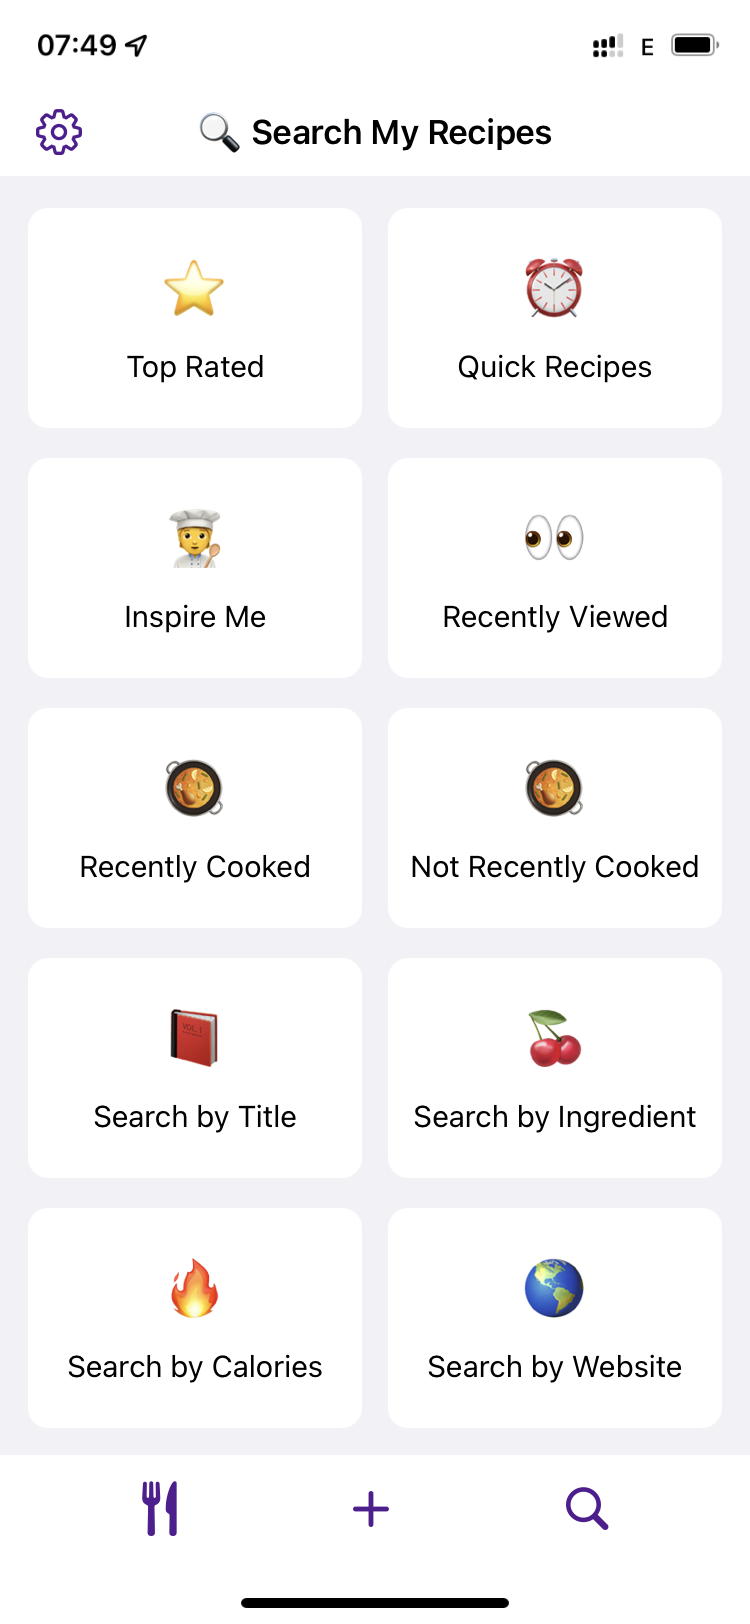 , Recipechef &#8211; Importen und organisieren von Rezepten für iOS